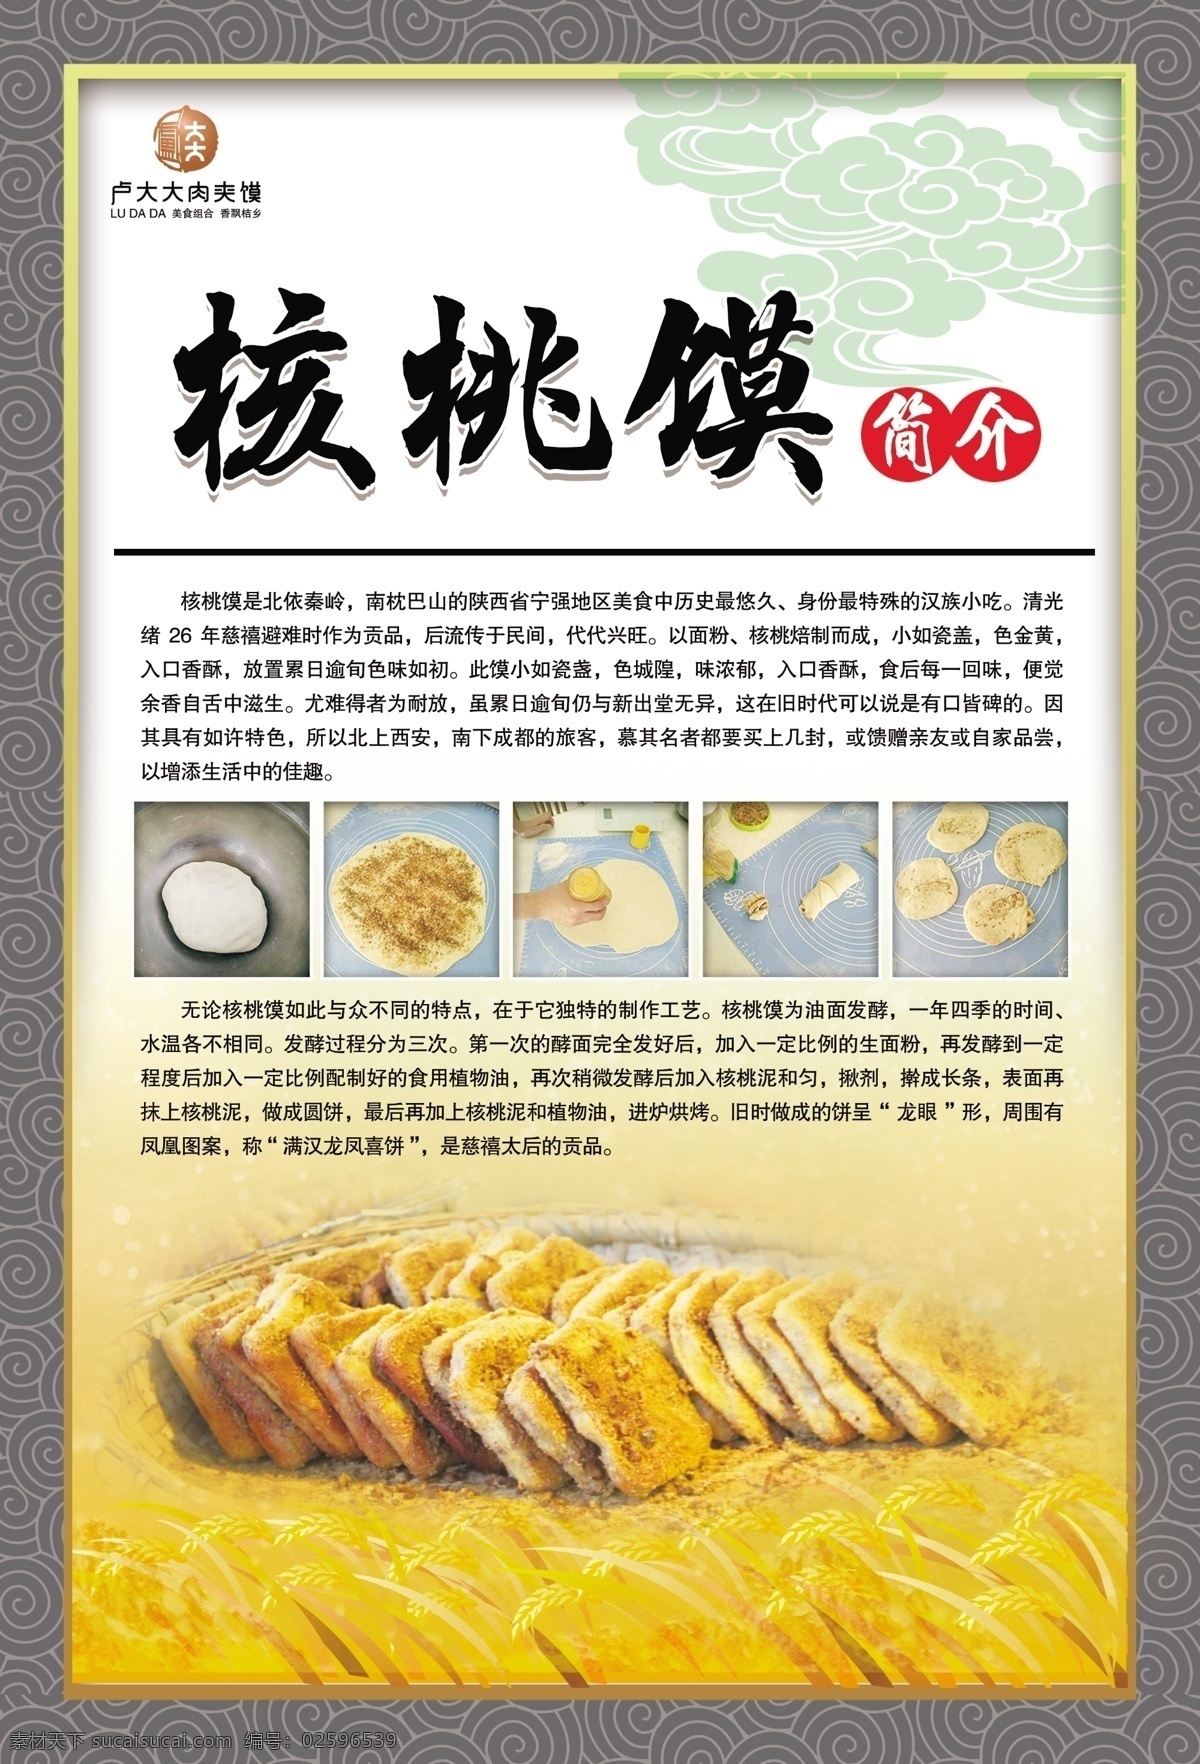 核桃 馍 海报 核桃馍 地方小吃 中华美食 面食 饼